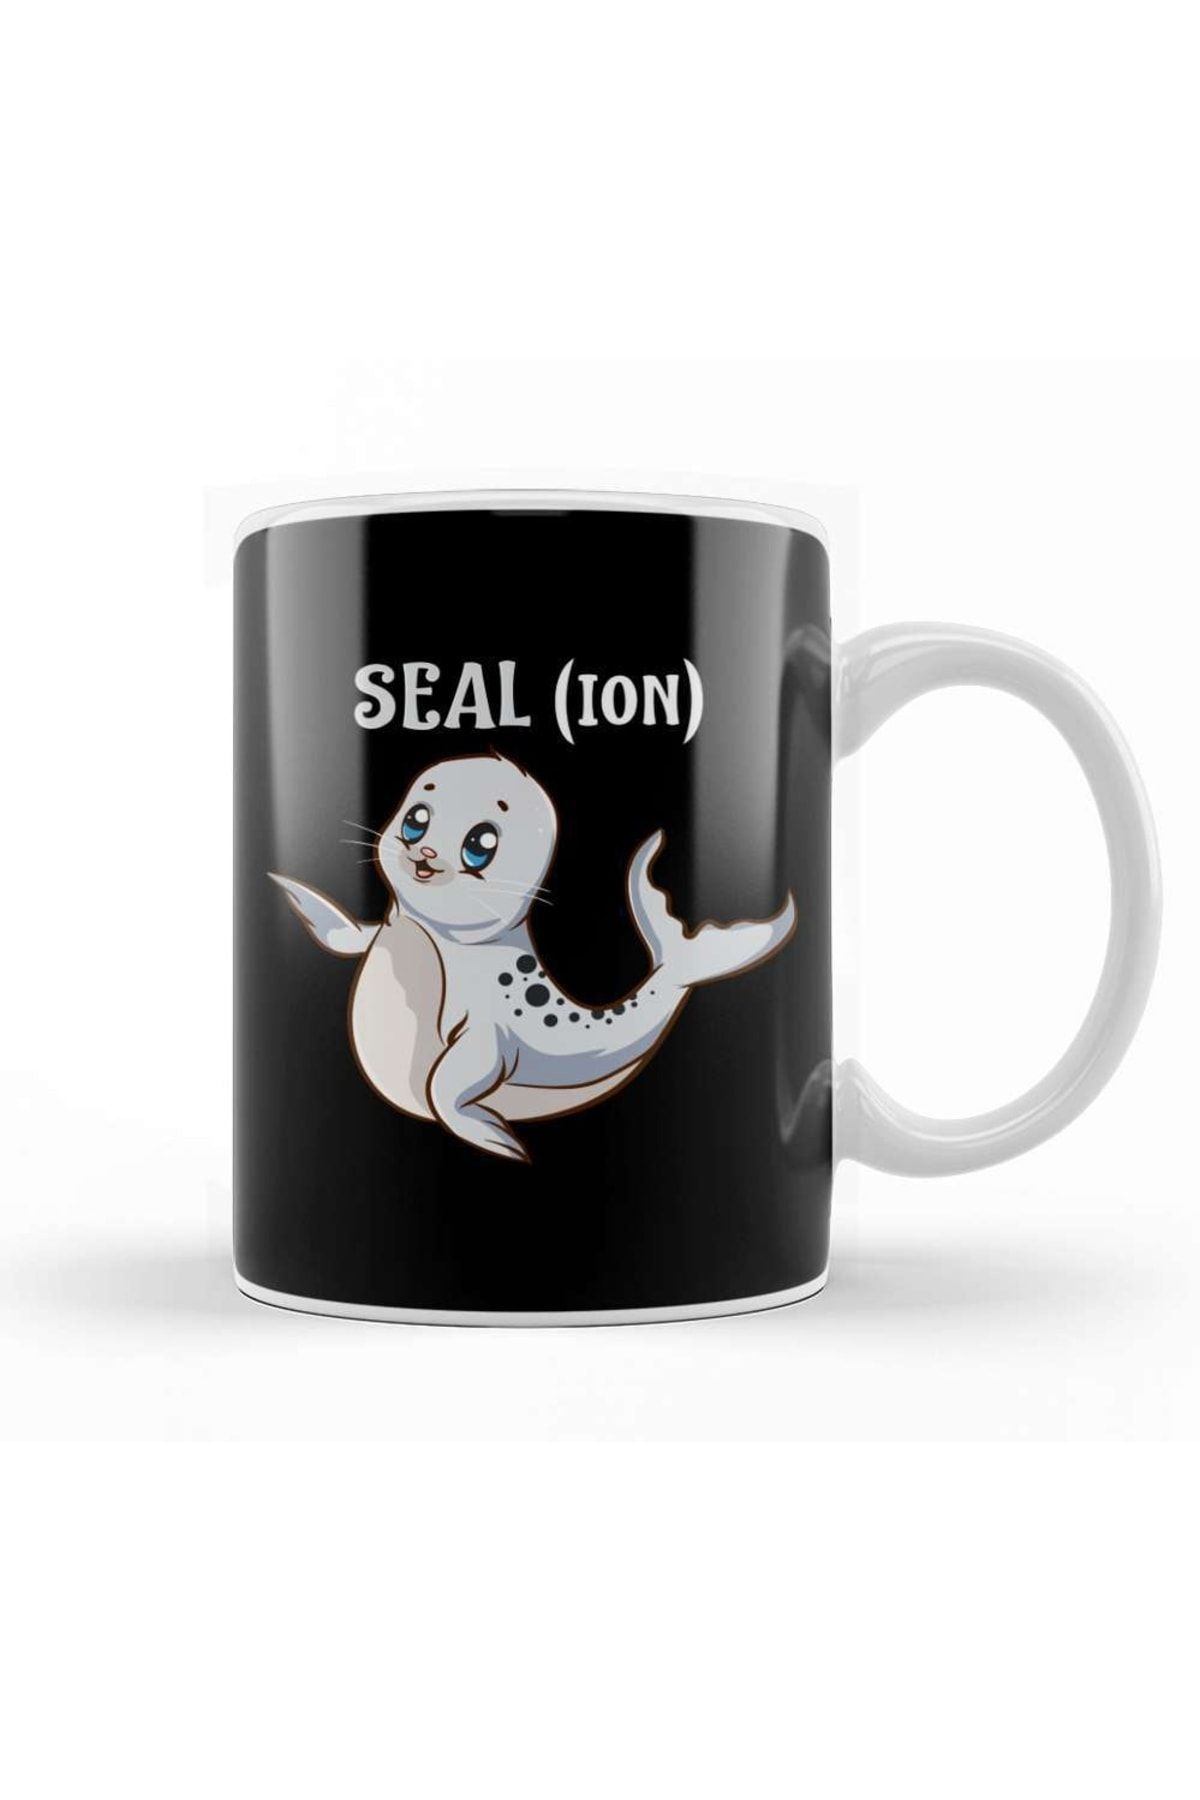 Baskı Dükkanı Seal(ion) Sea Lion Pun Funny Baby Sealion Pun Kupa Bardak Porselen